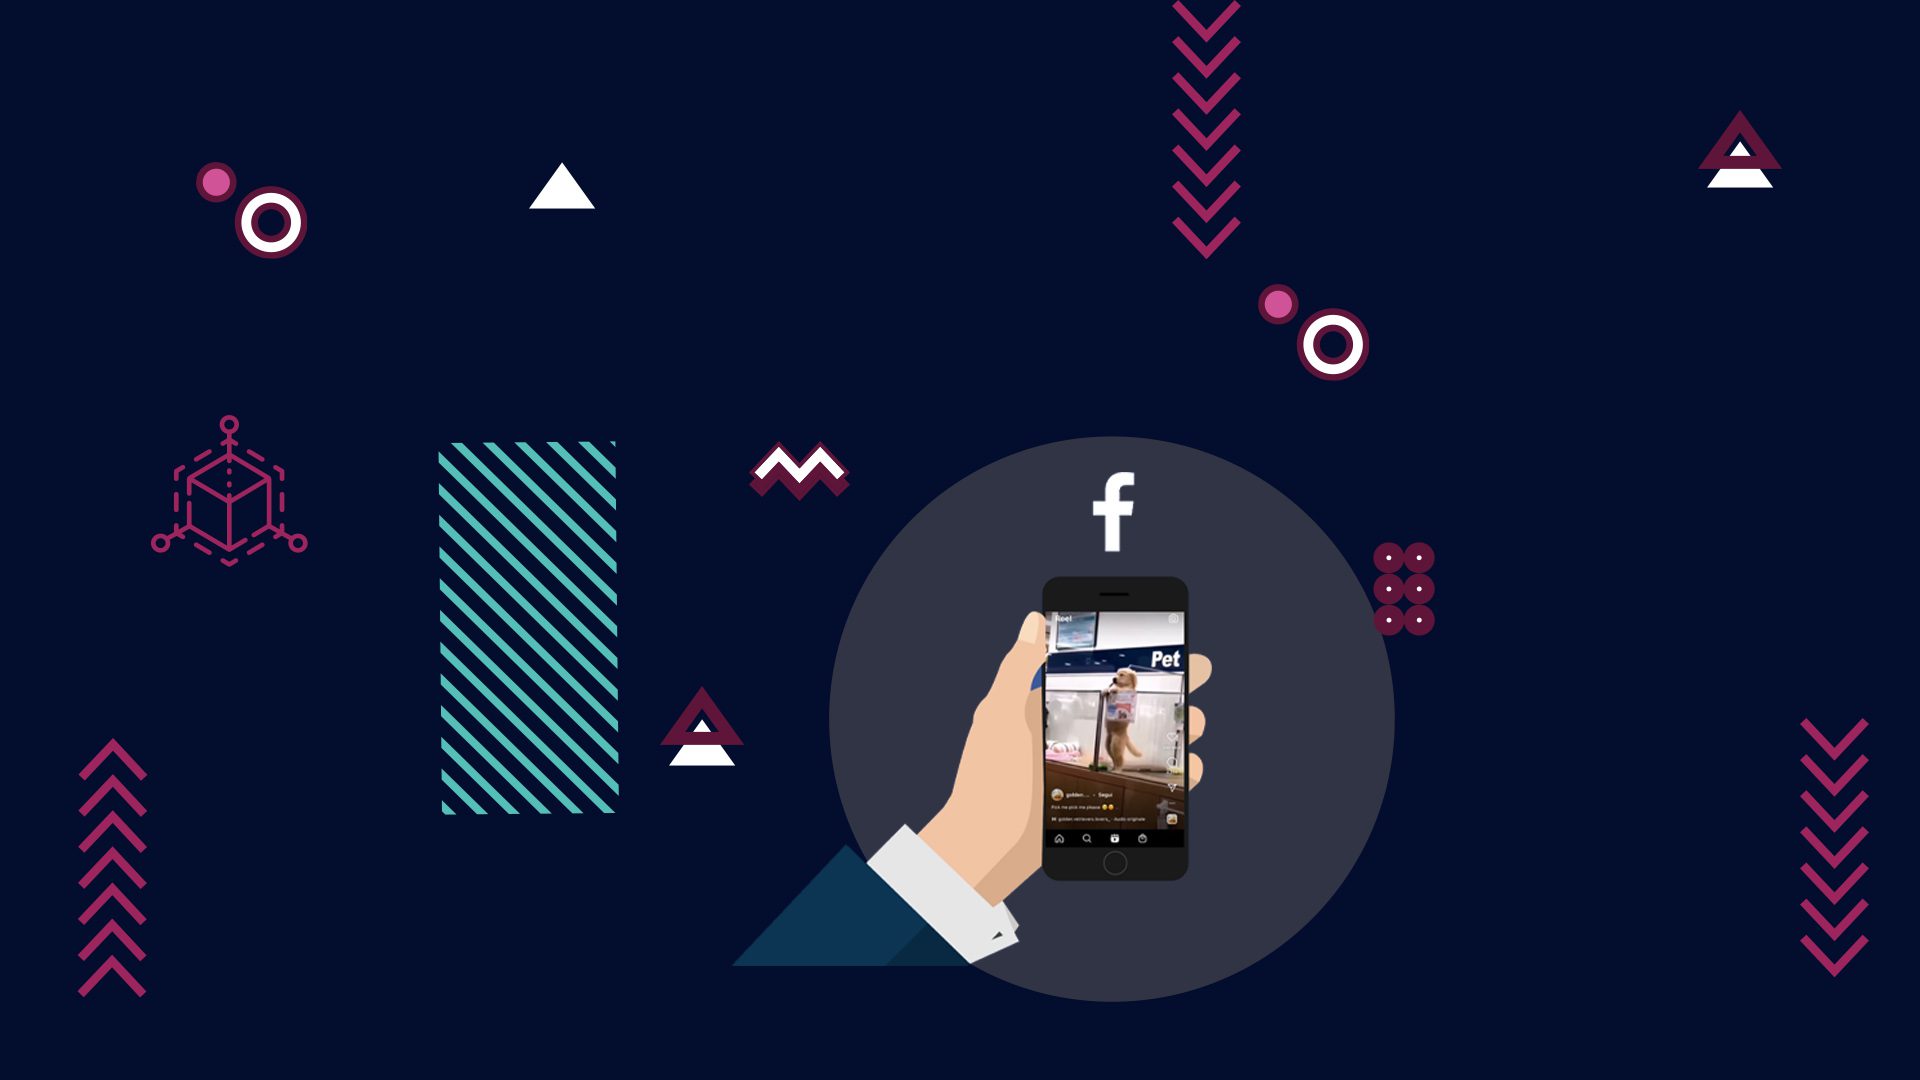 Pochi giorni dopo che TikTok ha annunciato di aver raggiunto un miliardo di utenti attivi, Facebook ha lanciato oggi Reels su Facebook per tutti gli utenti negli Stati Uniti, portando il suo concorrente video in formato breve a molte più persone.